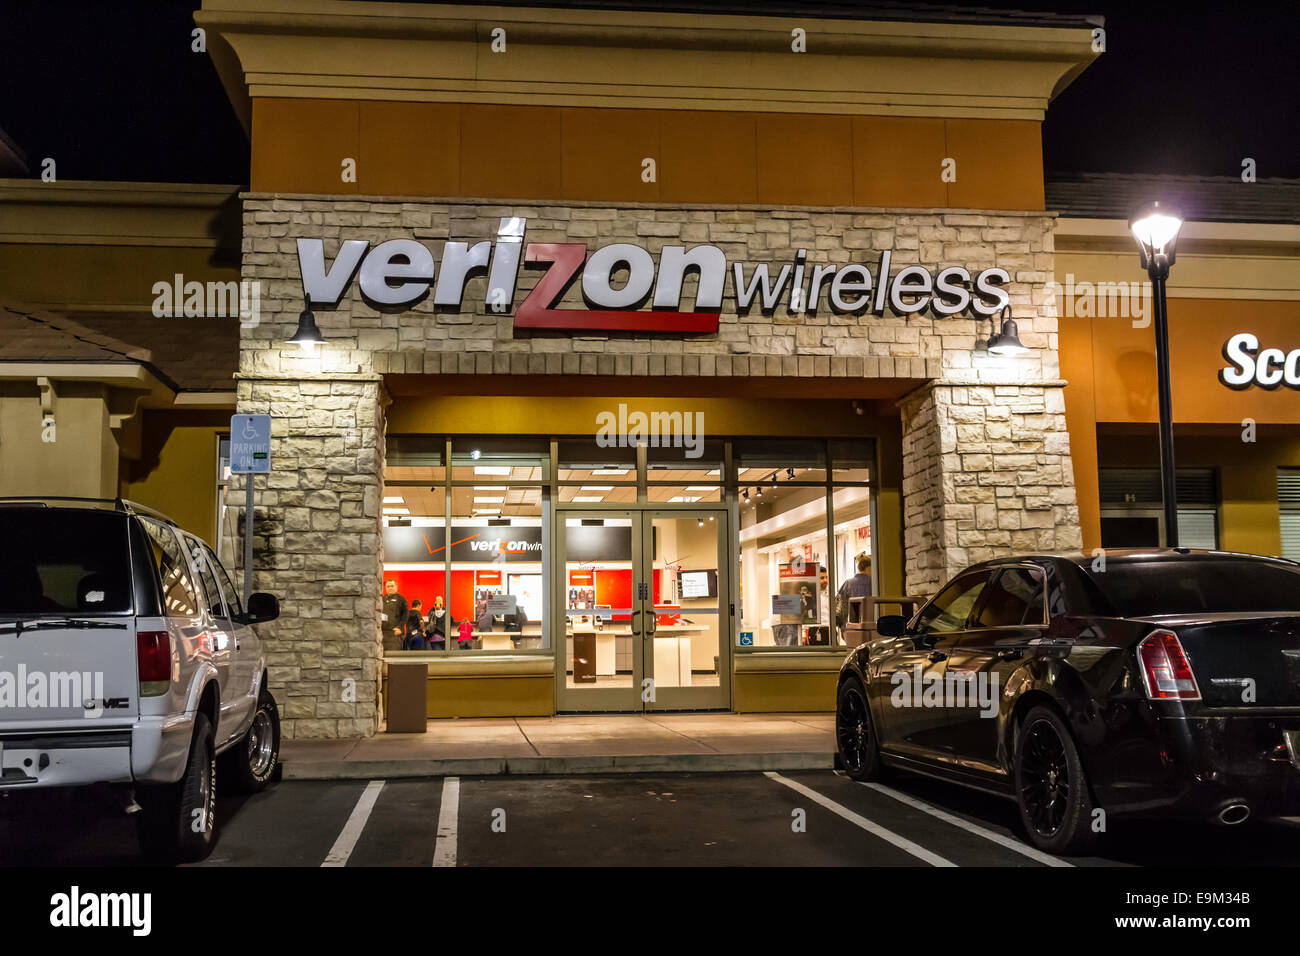 A Verizon Wireless Store at night in Modesto California Stock Photo